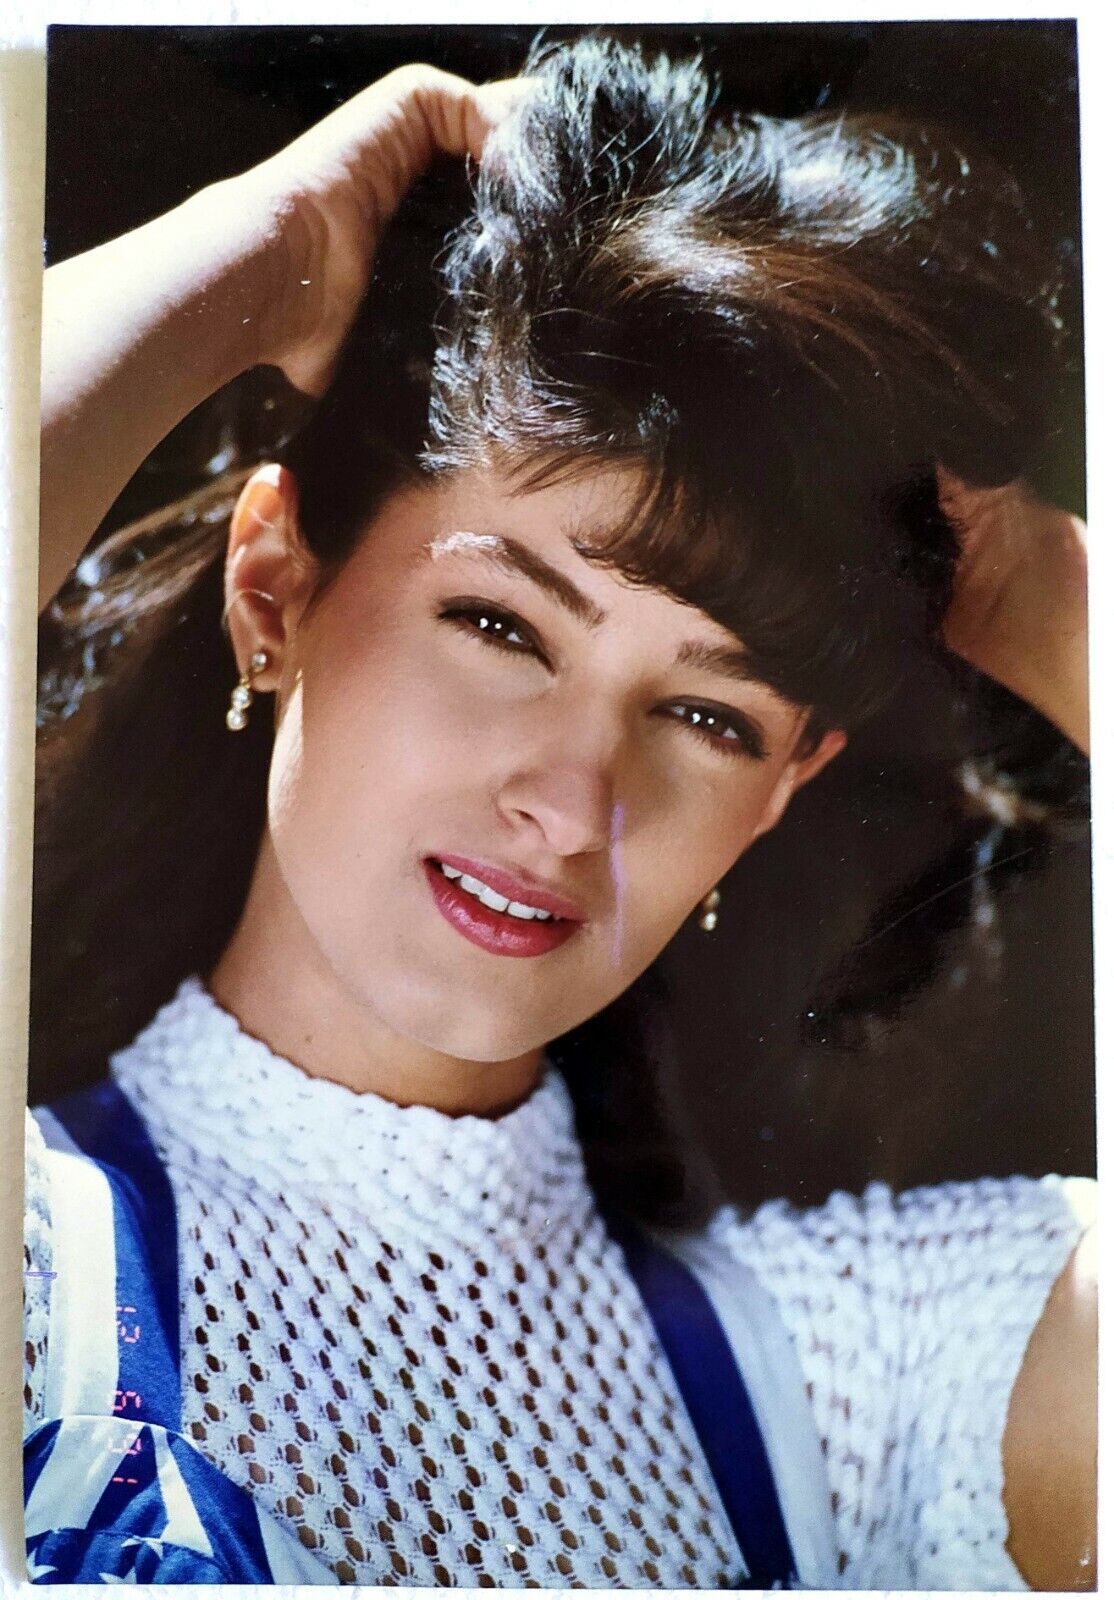 Twinkle Khanna Ka Xxx Video - Bollywood Actor - Twinkle Khanna - Rare Photo Photograph - 17 X 25 cm | eBay